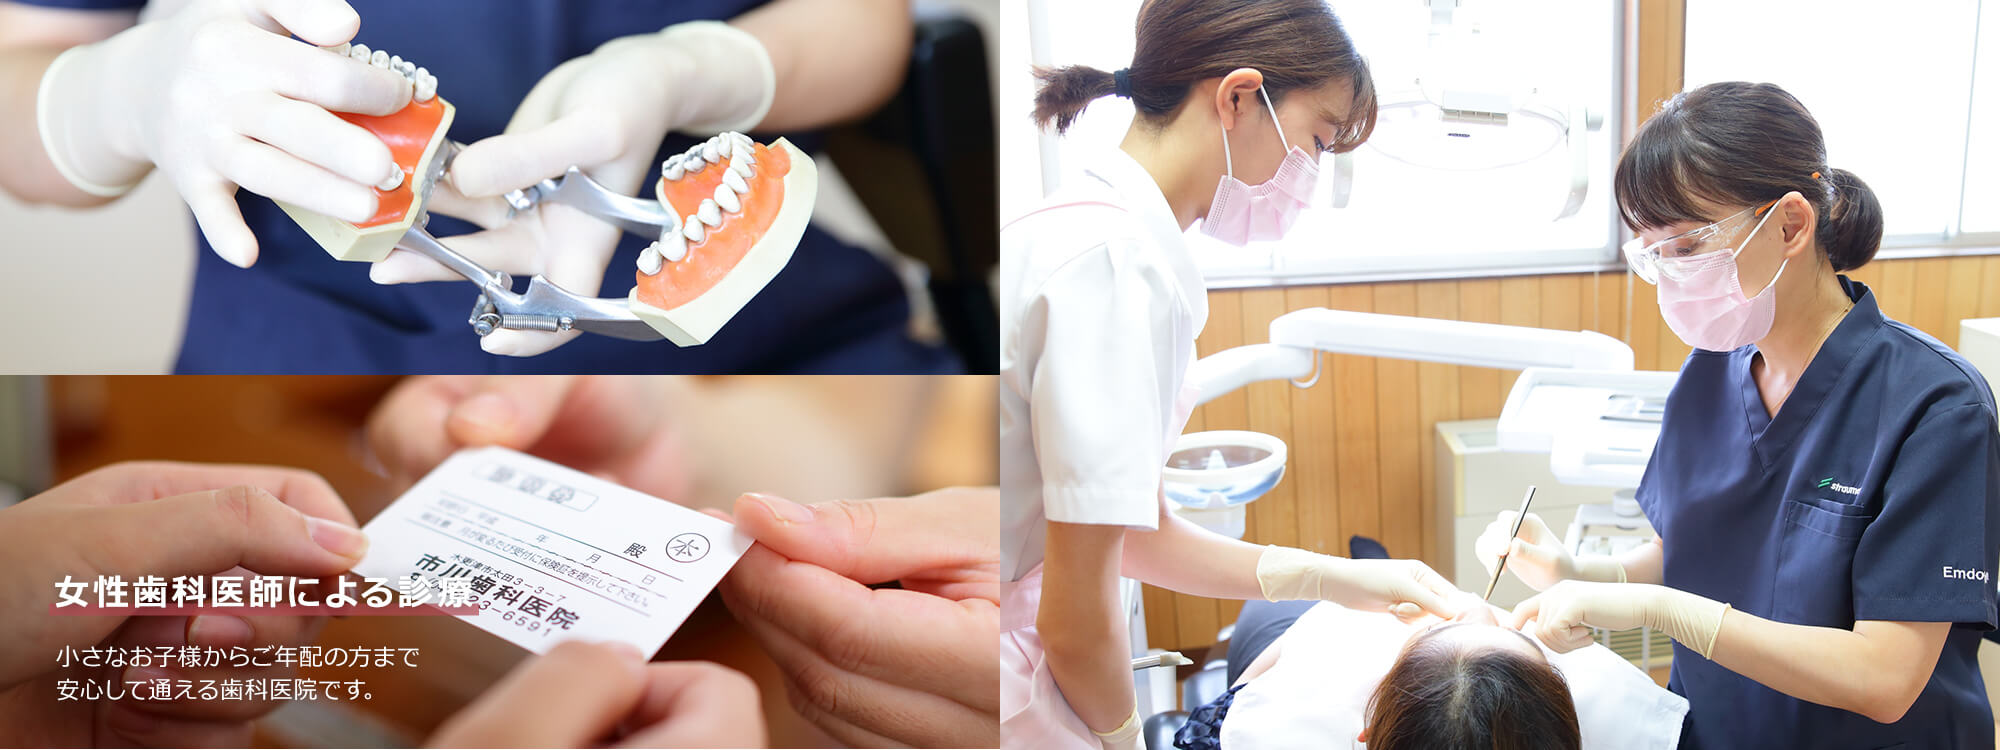 女性歯科医師による診療 小さなお子様からご年配の方まで安心して通える歯科医院です。